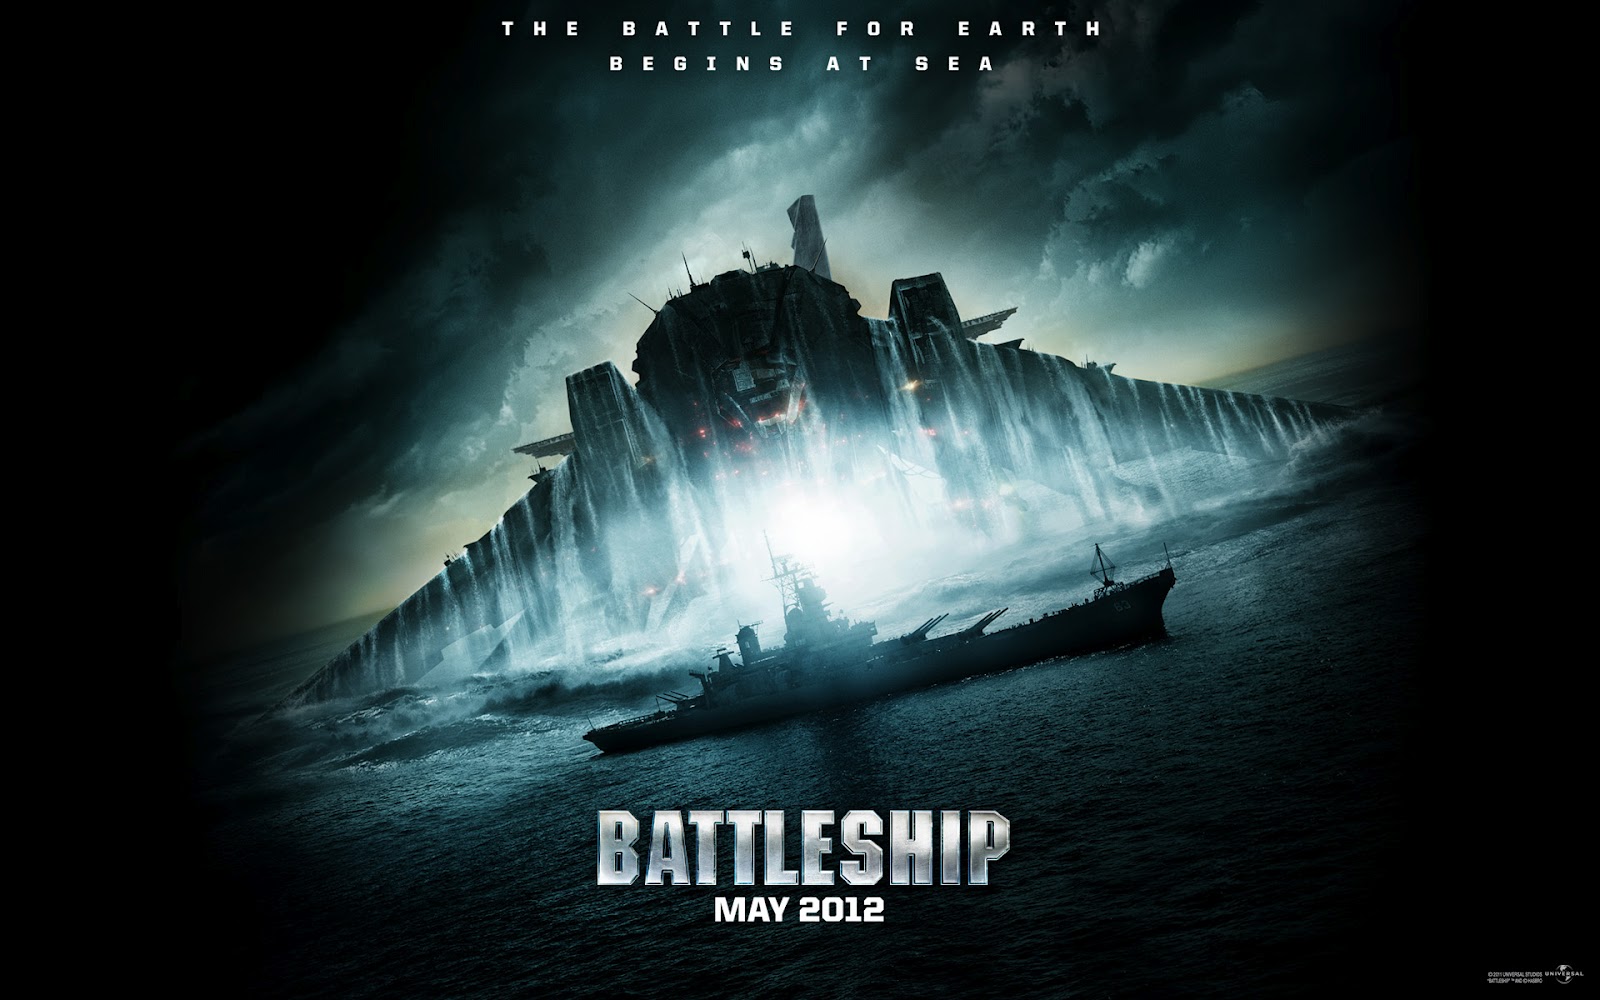 http://2.bp.blogspot.com/-_KyM7g2_F7I/T2t1oYLuitI/AAAAAAAAAC8/p1GW-xJmszI/s1600/Battleship-poster-e-foto-per-il-kolossal-ispirato-alla-battaglia-navale.jpg